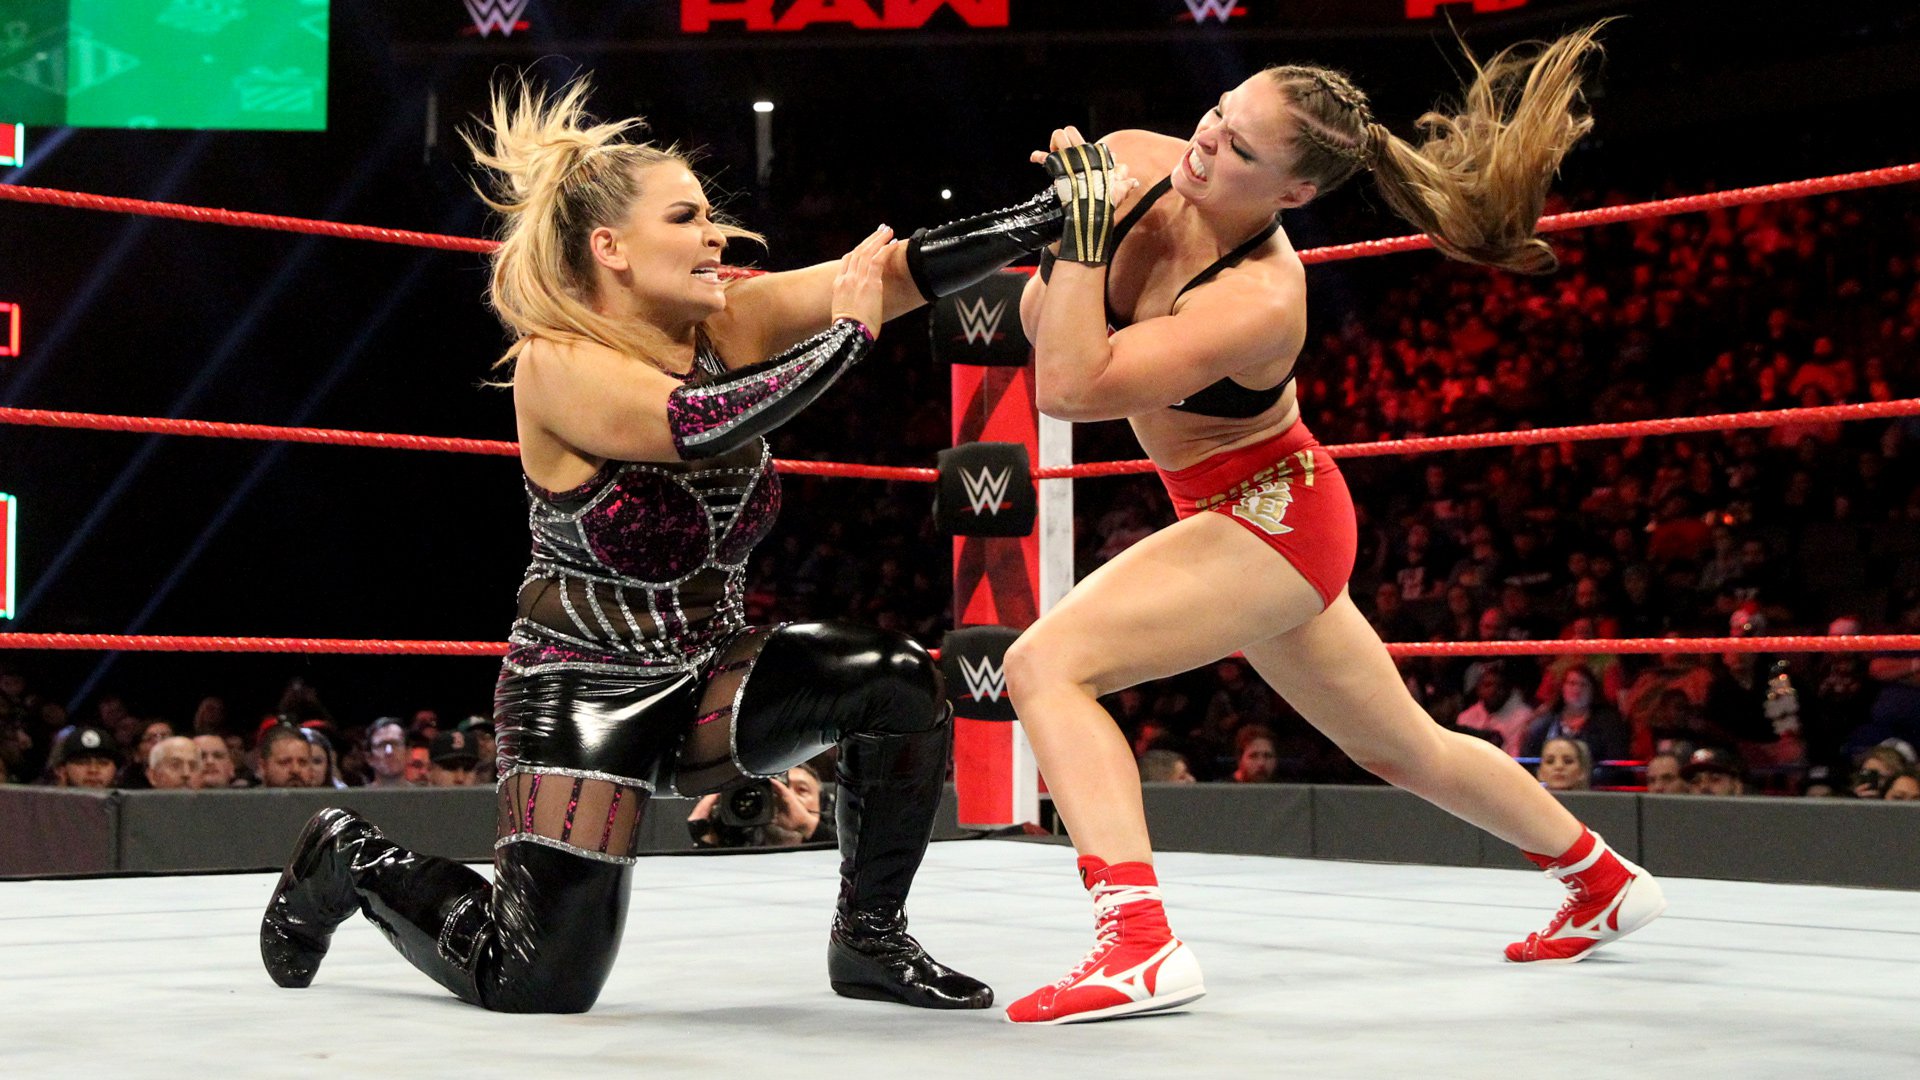 Raw Women’s Champion Ronda Rousey def. Natalya WWE